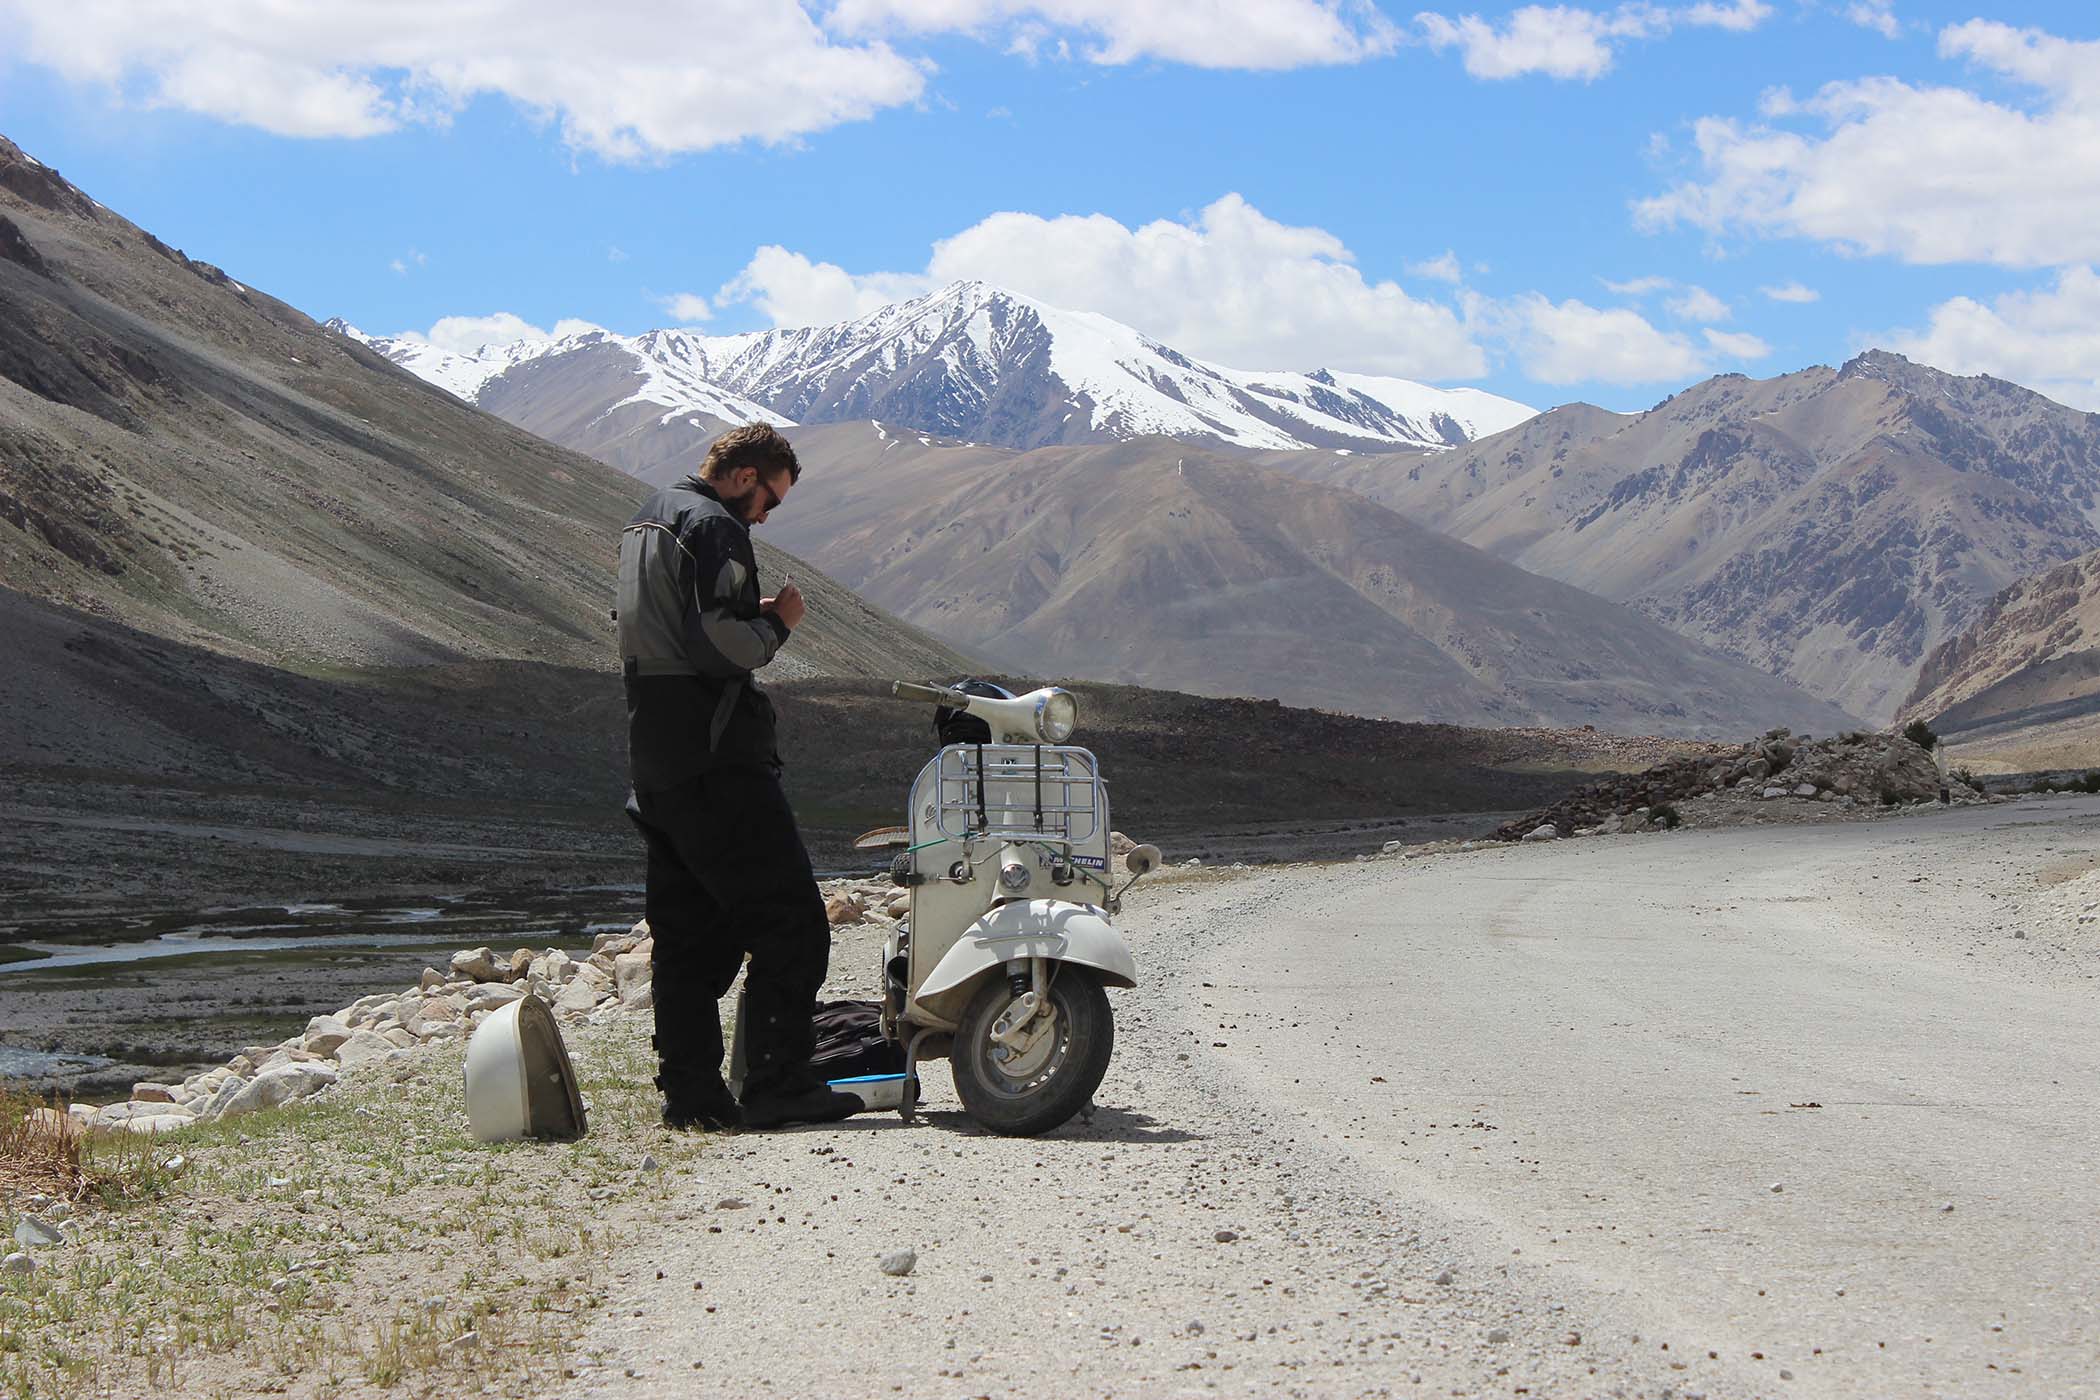 Tuning the Vespa in Tajikistan